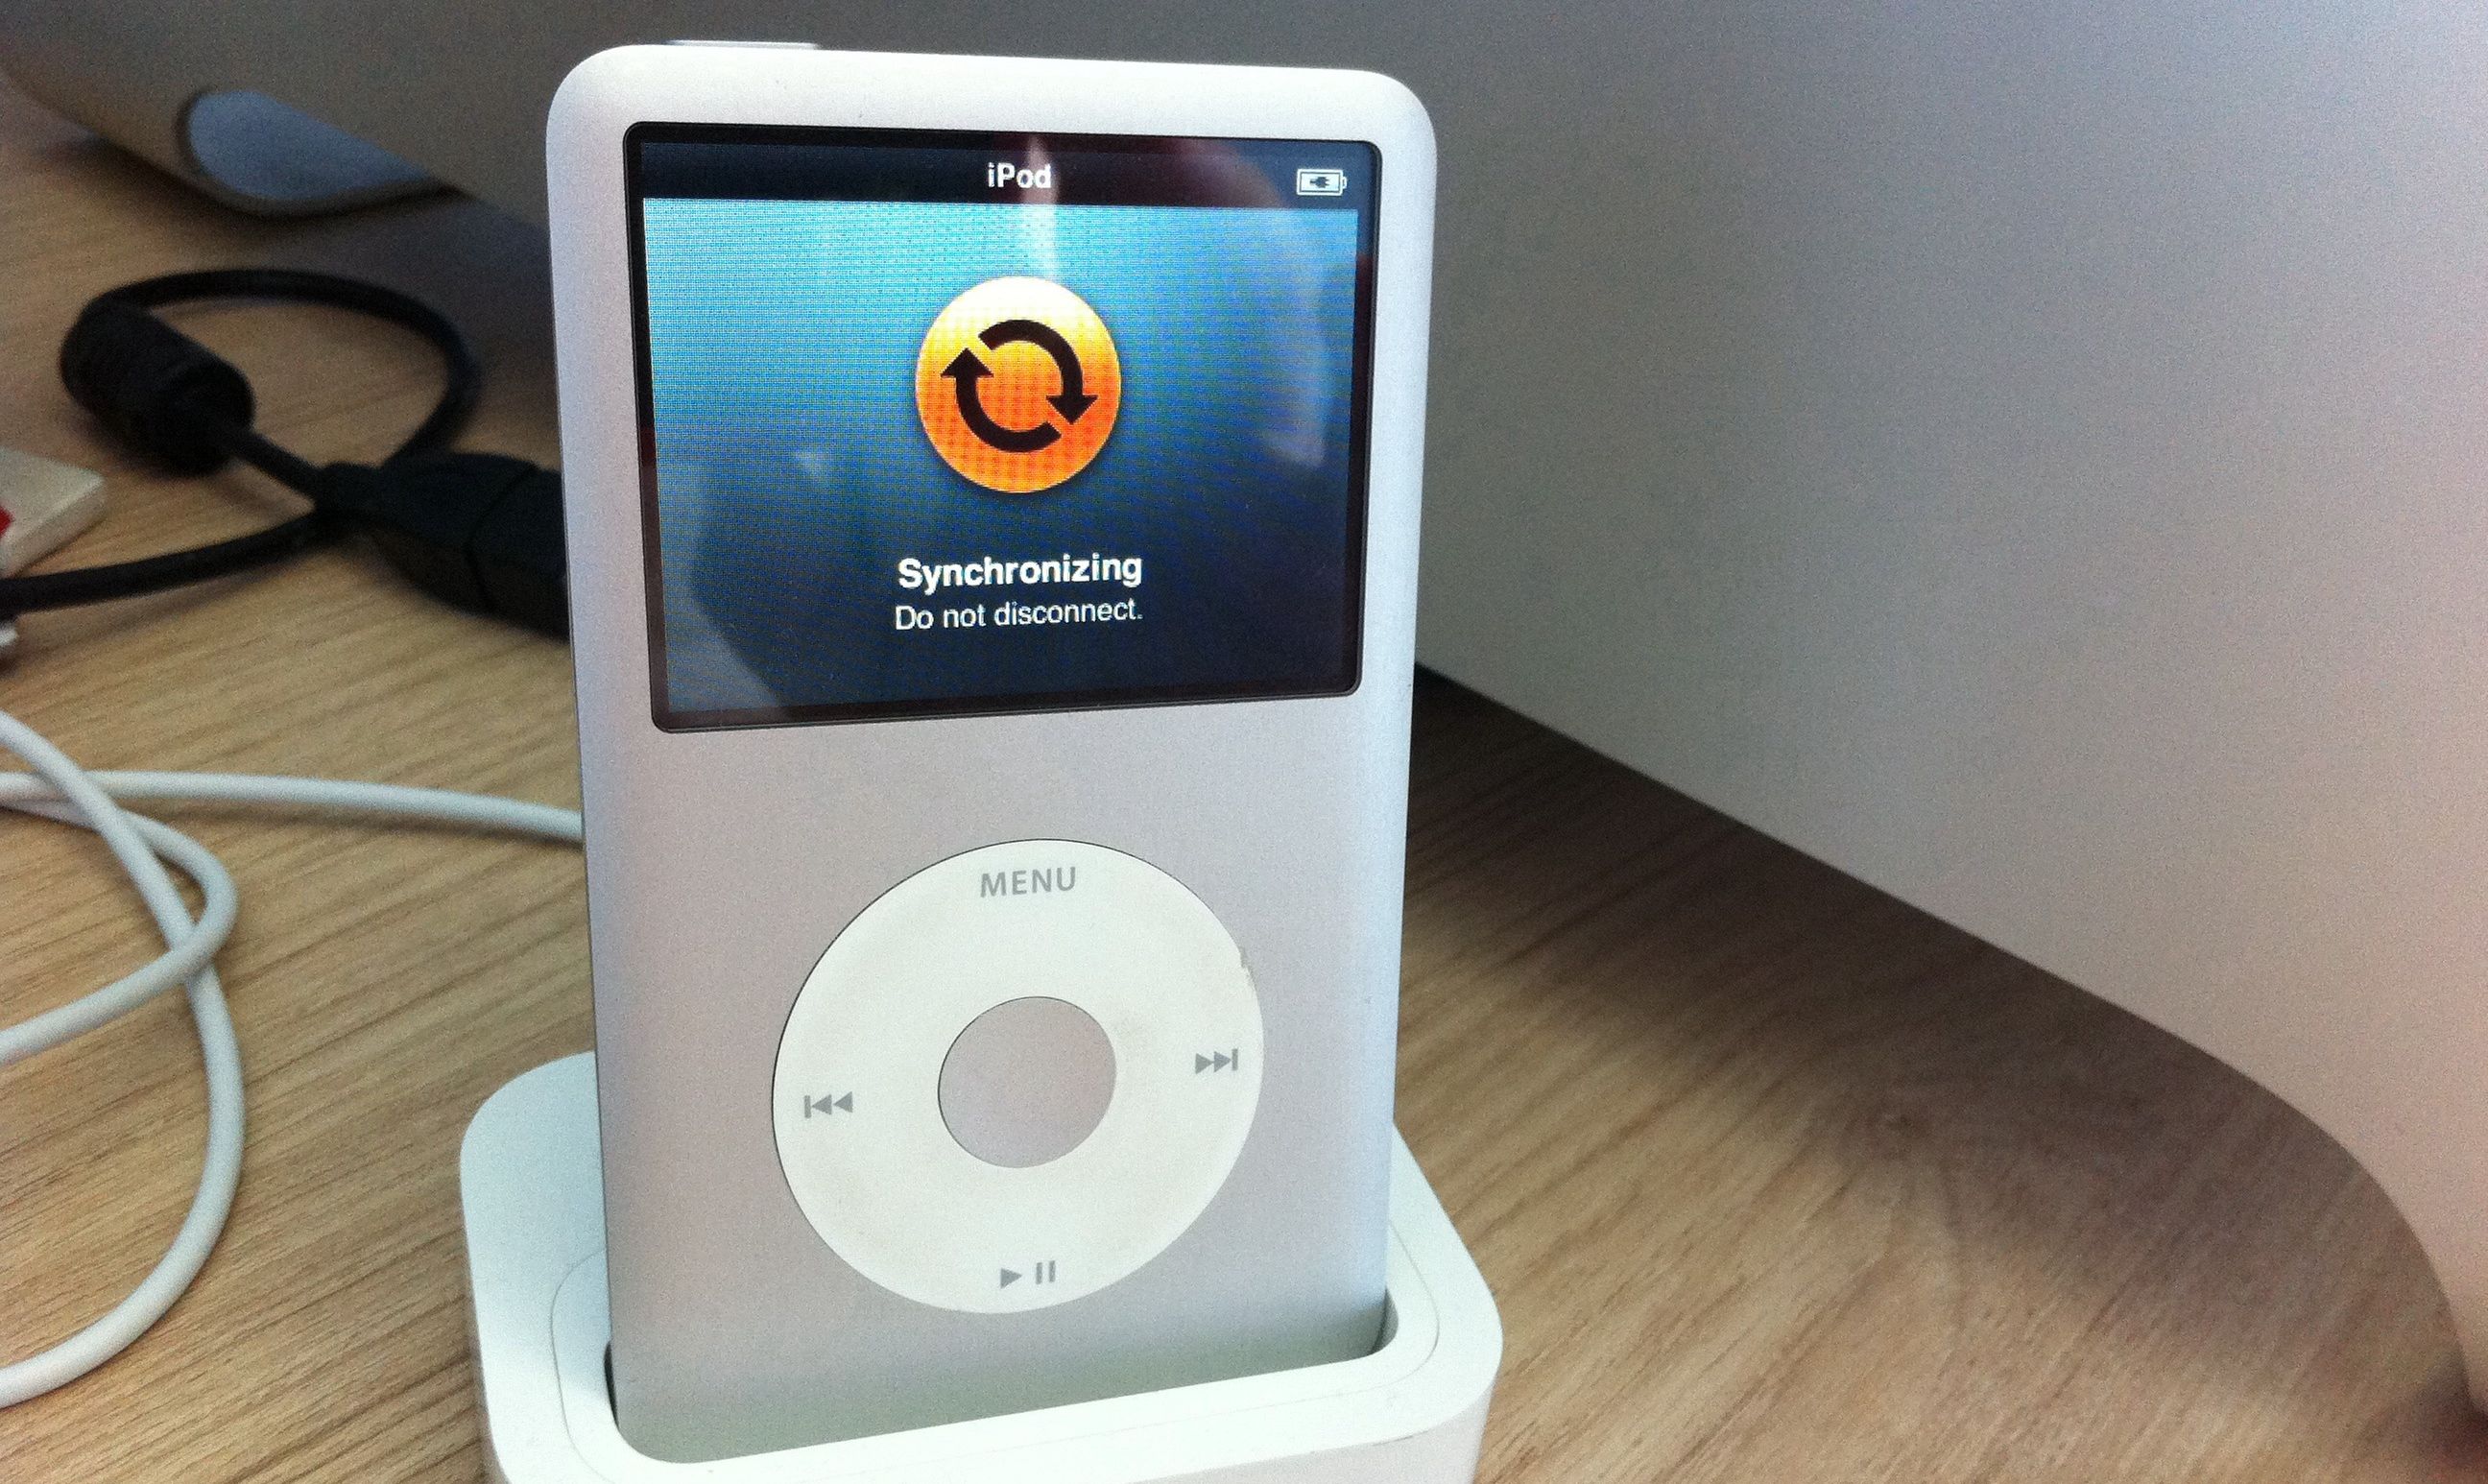 iPod Classic in dock